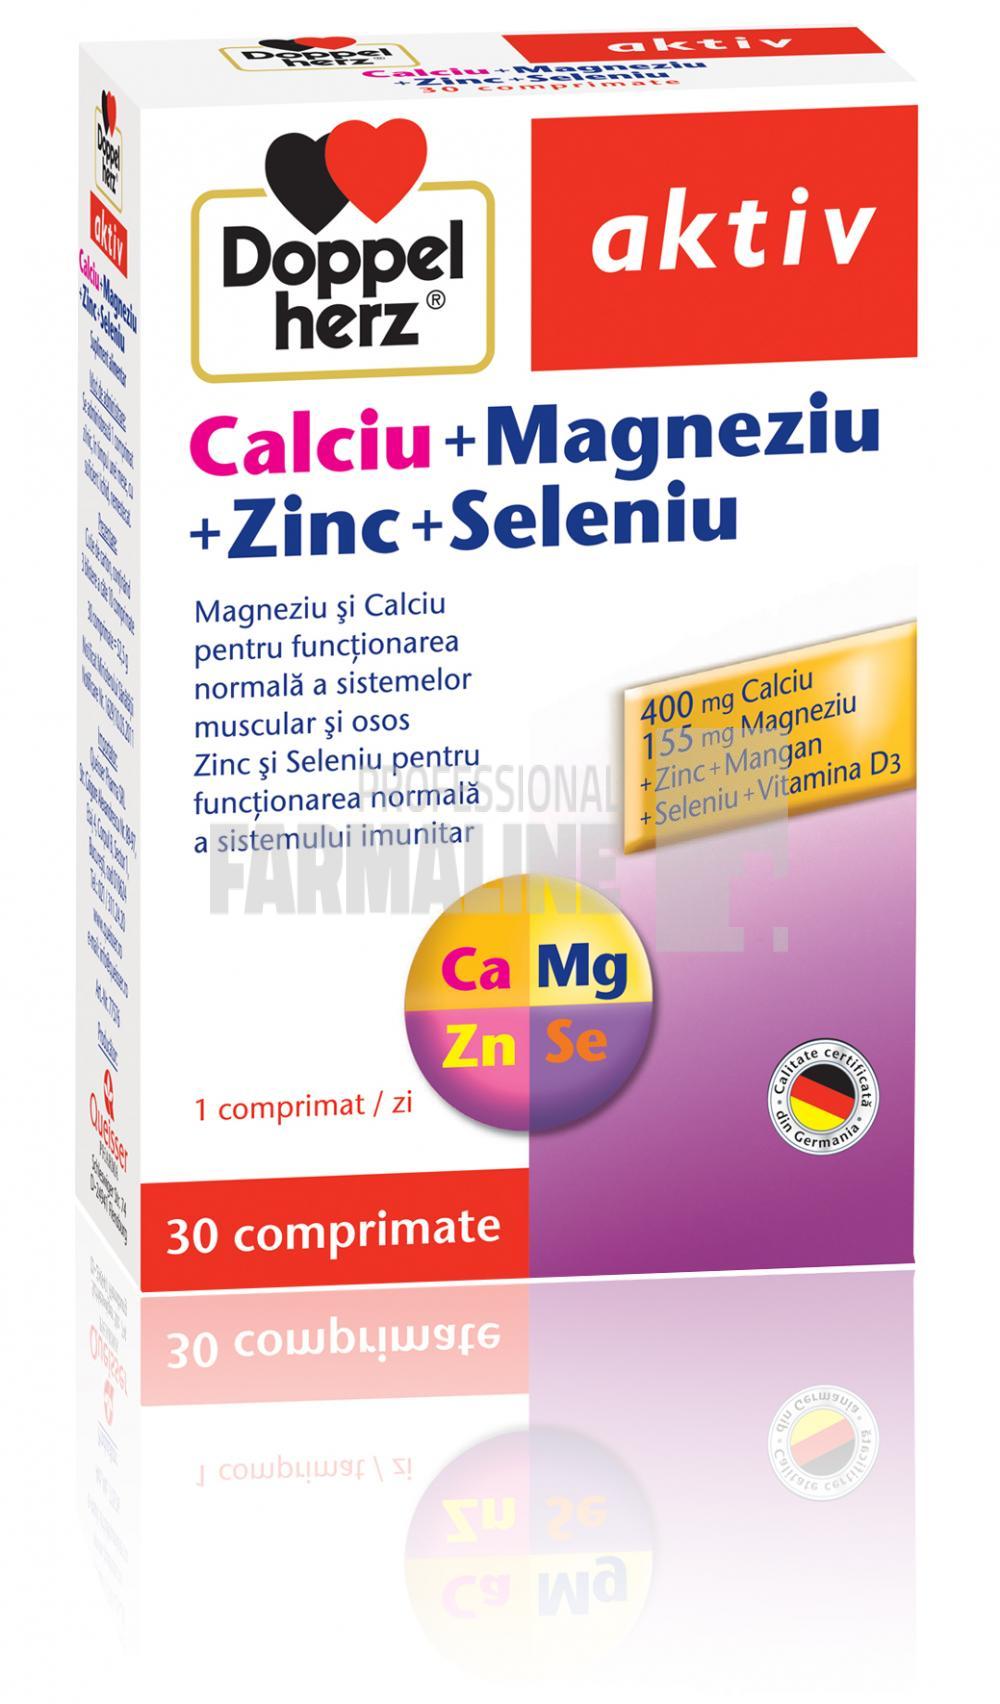 Doppelherz Aktiv Calciu + Magneziu + Zinc + Seleniu 30 comprimate